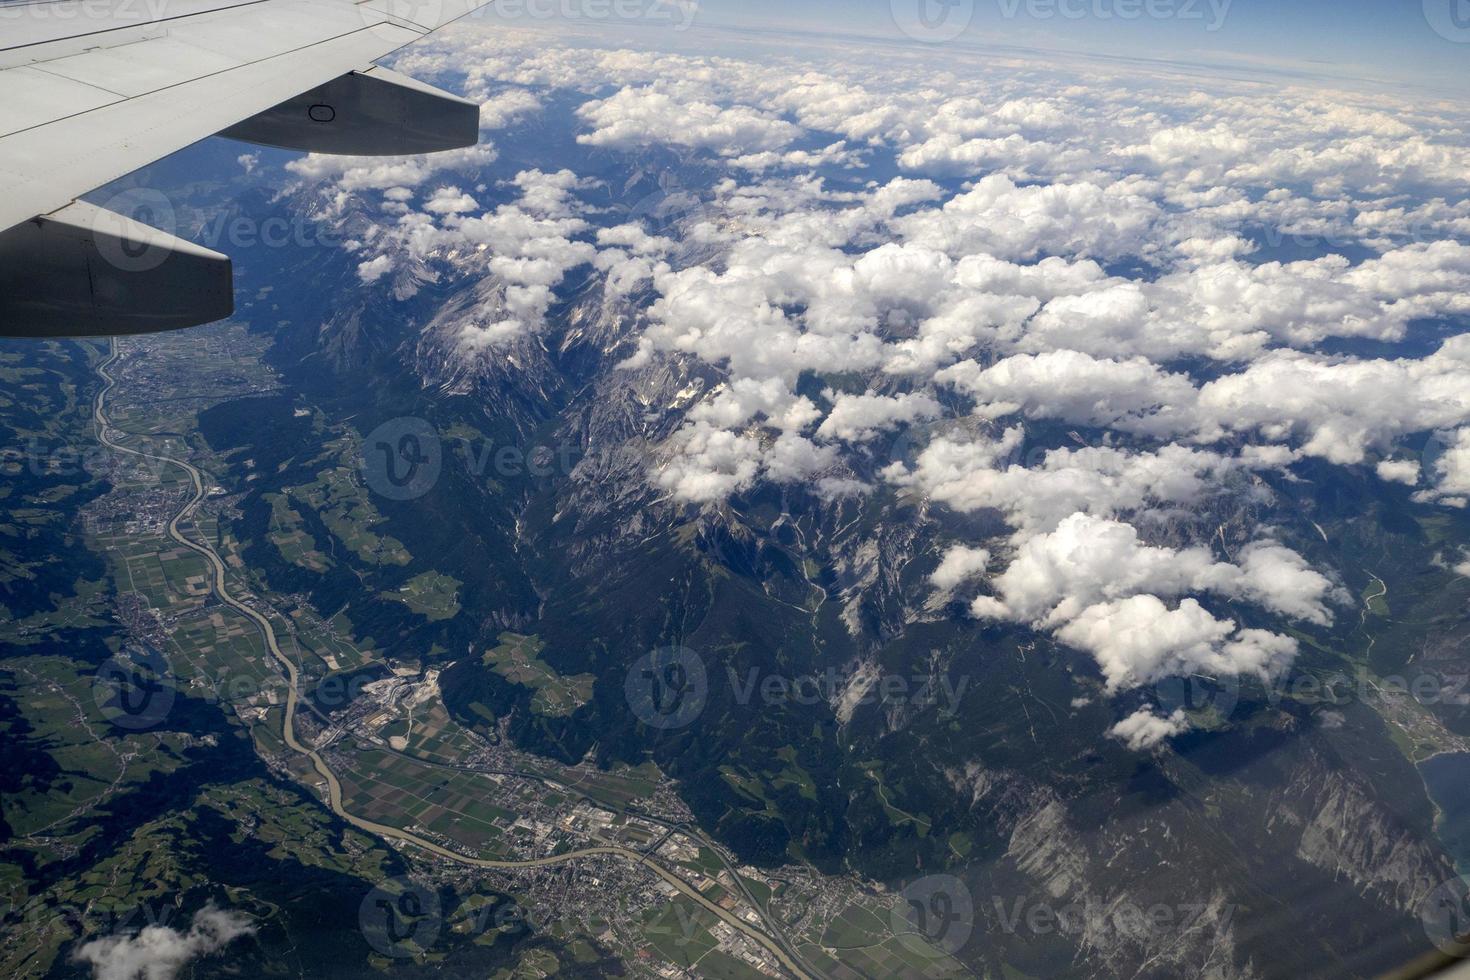 panorama aéreo do vale de innsbruck de avião foto